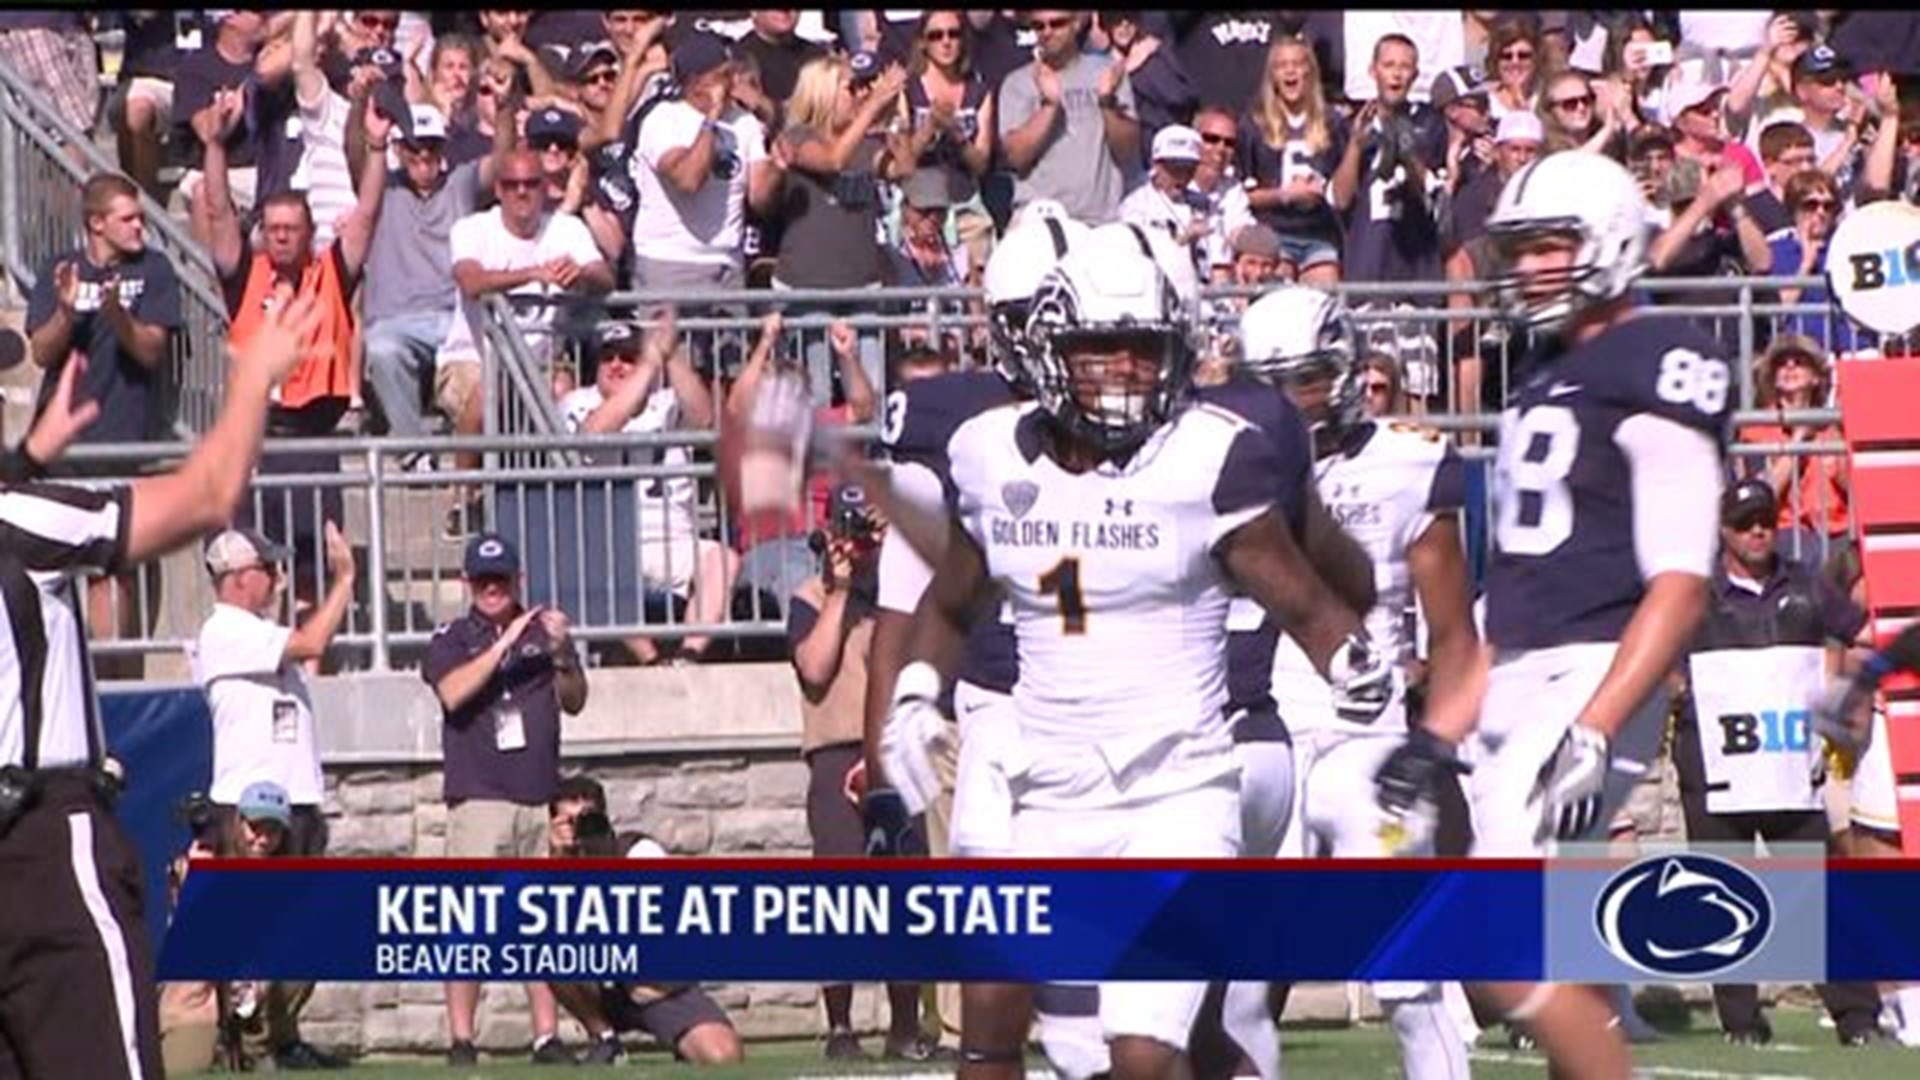 Penn State season opener against Kent State